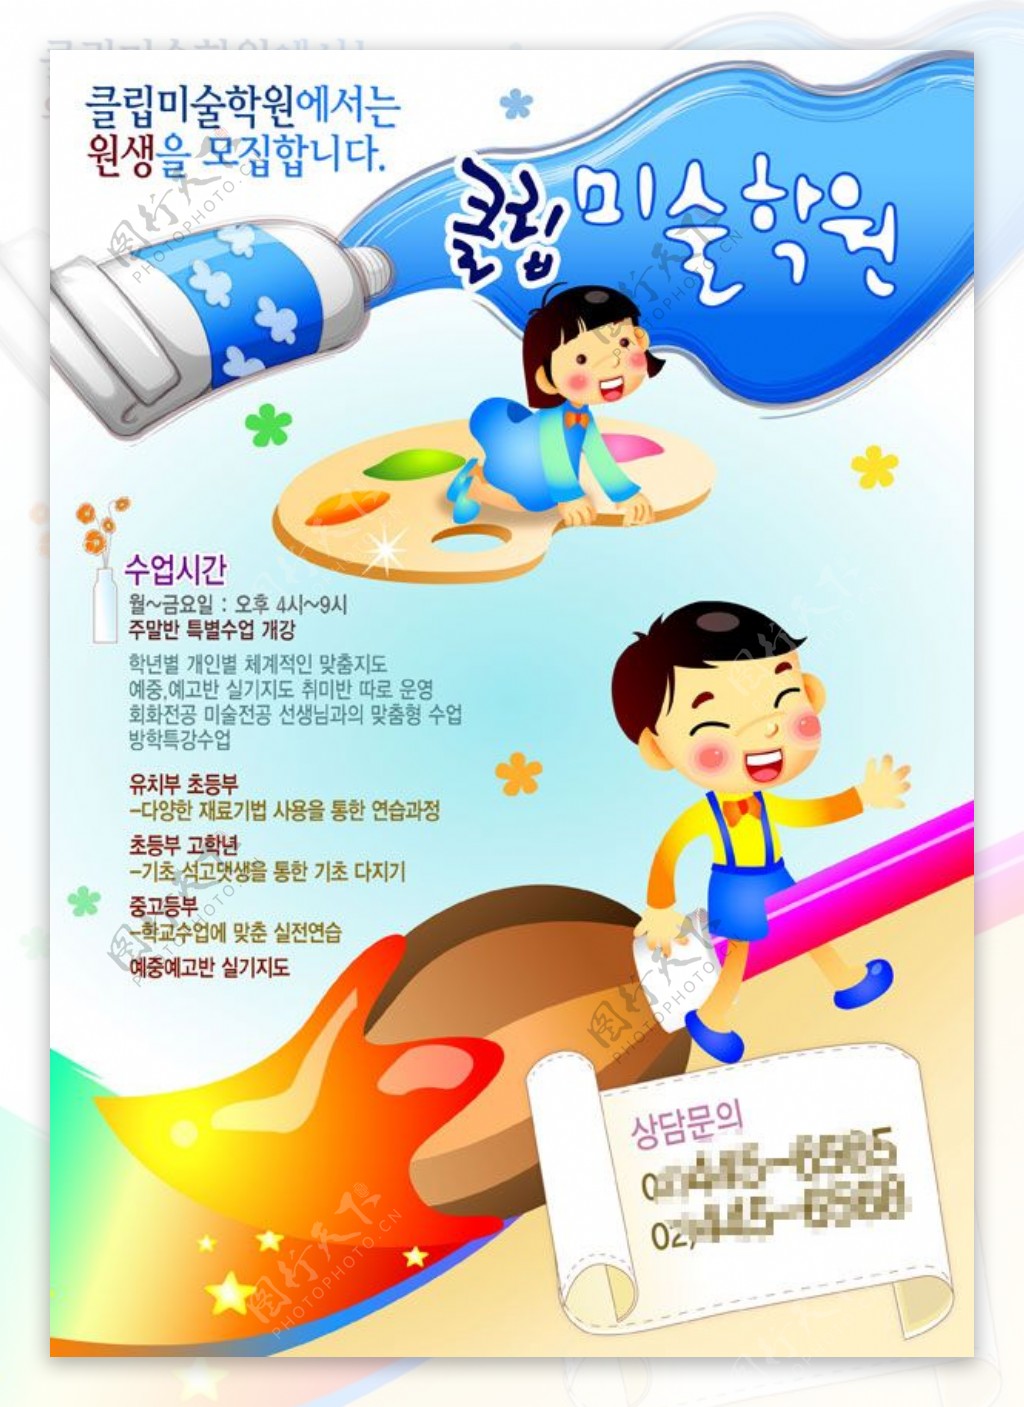 韩国少儿美术班招生简章广告